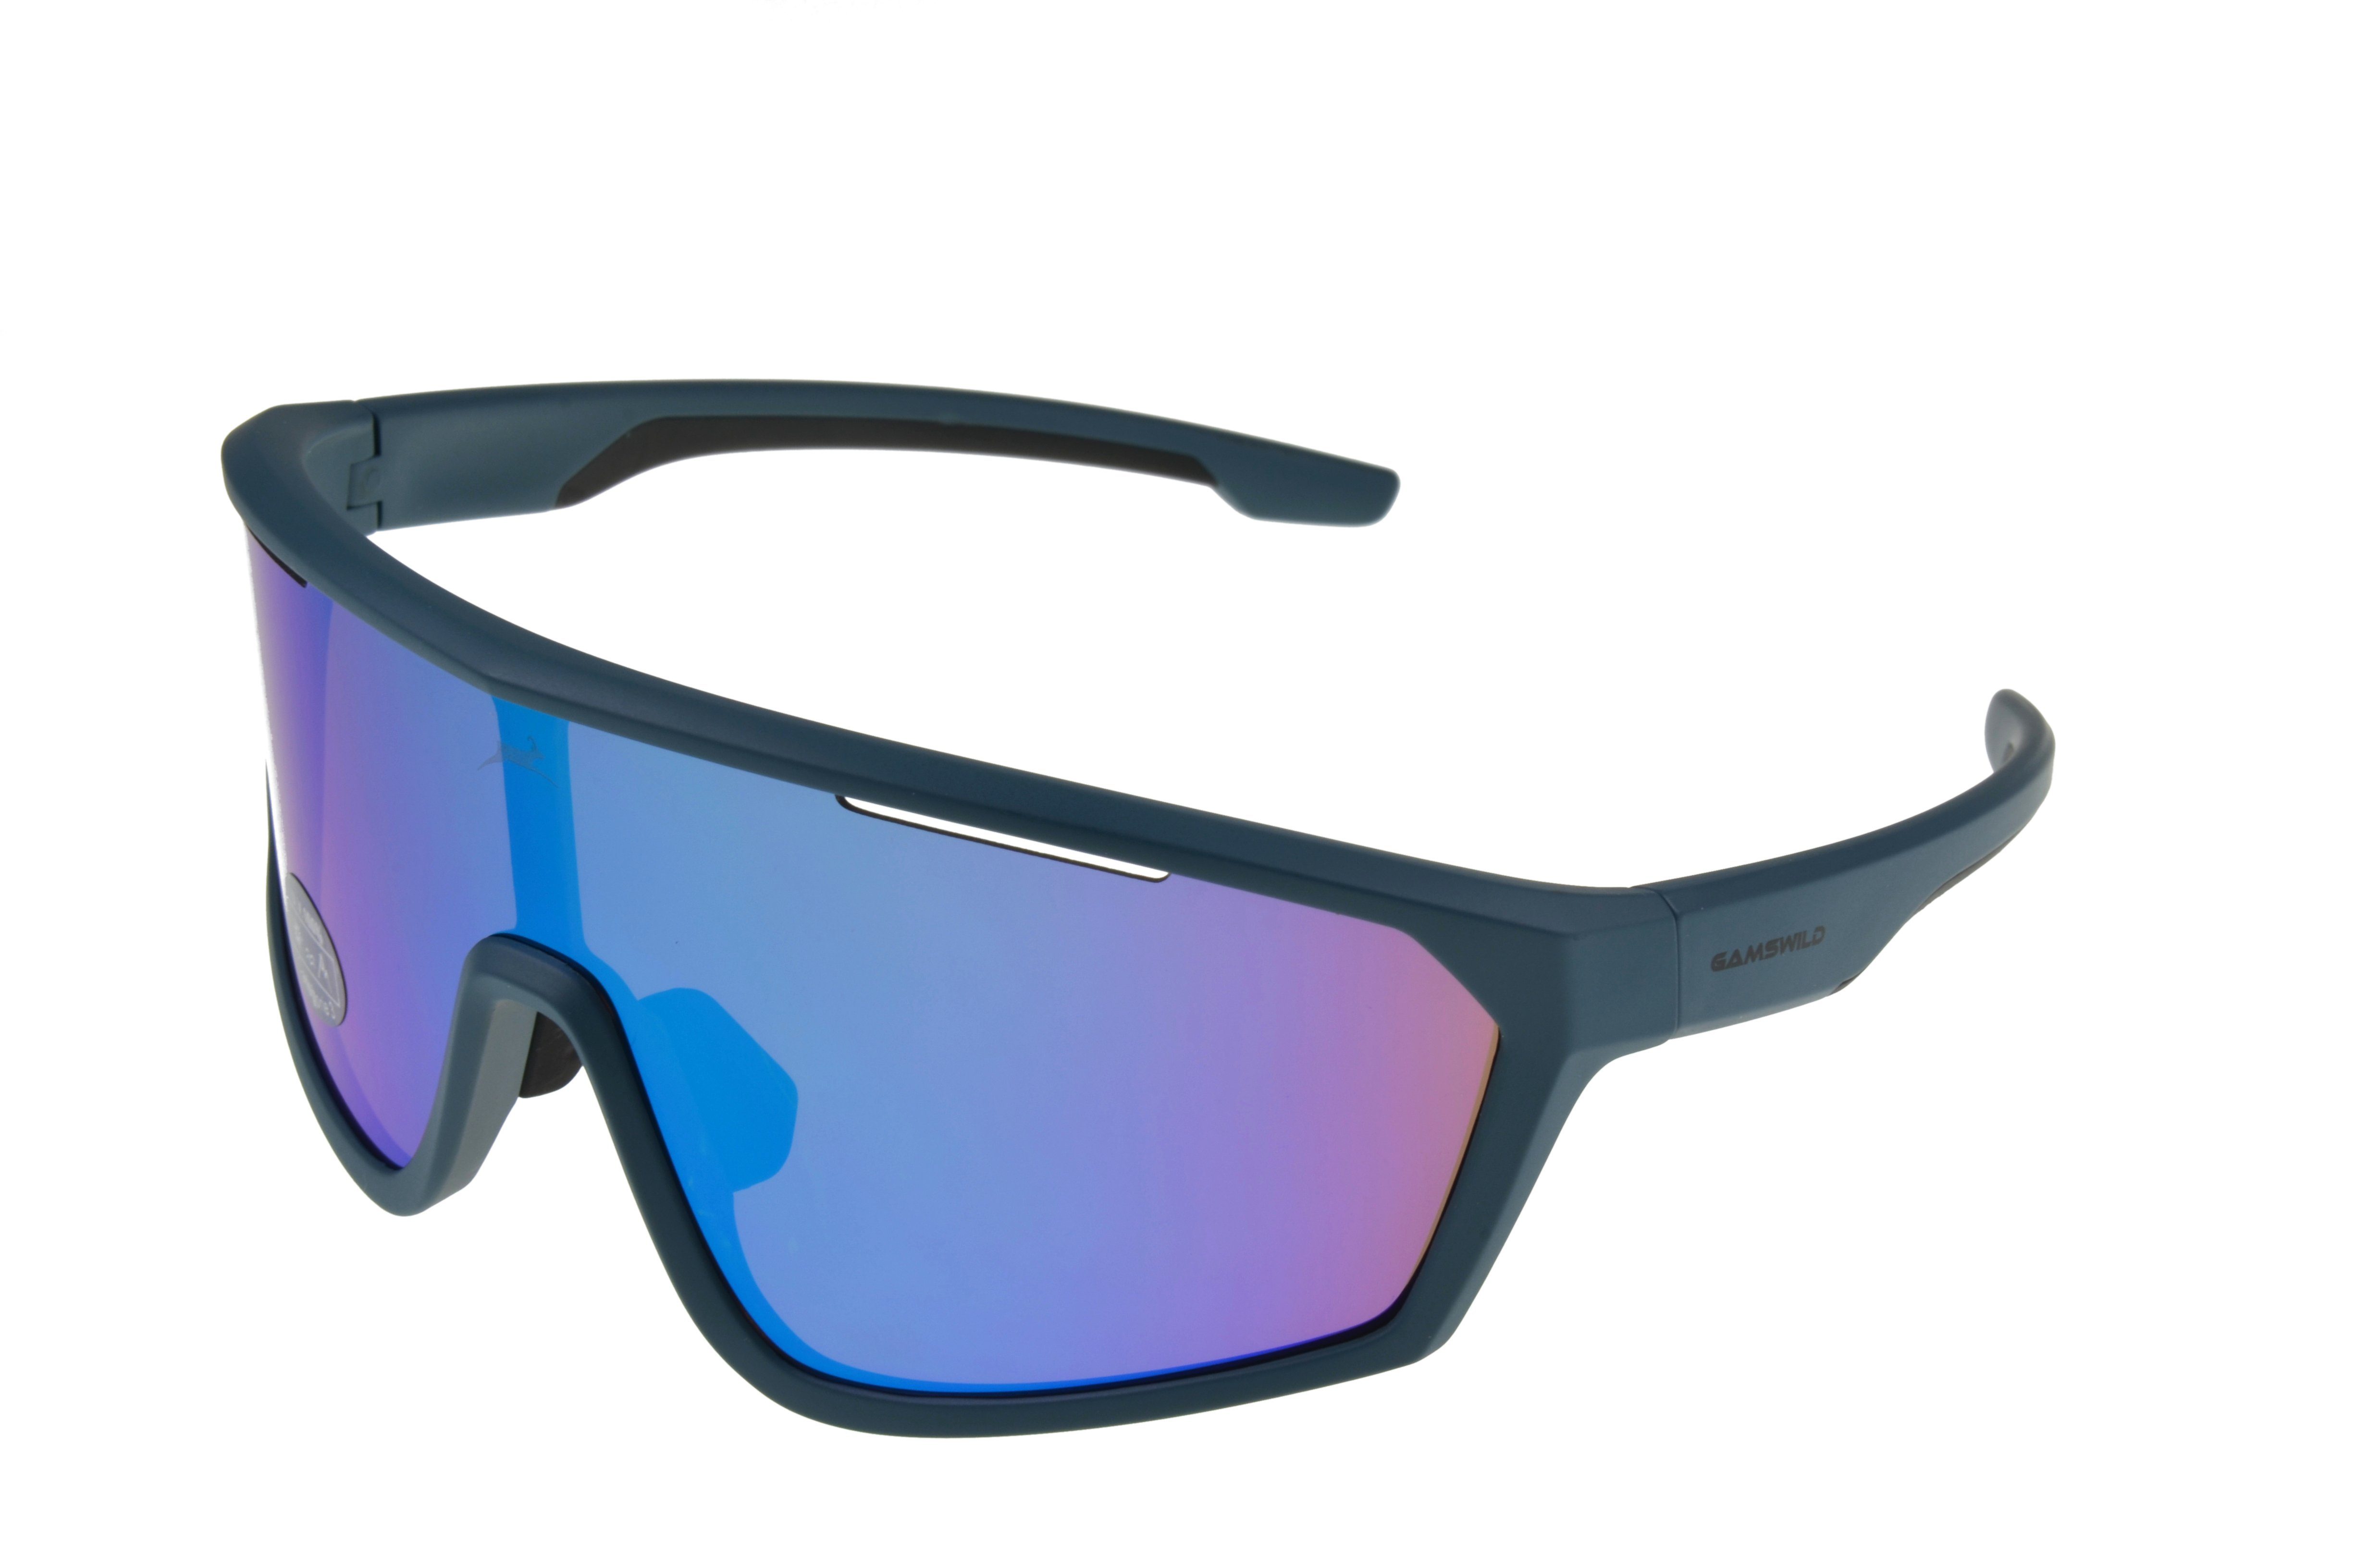 Gamswild Monoscheibensonnenbrille WS5838 Sonnenbrille Skibrille Fahrradbrille Damen Herren Unisex TR90 tolles Design, grün, blau, weiß bau